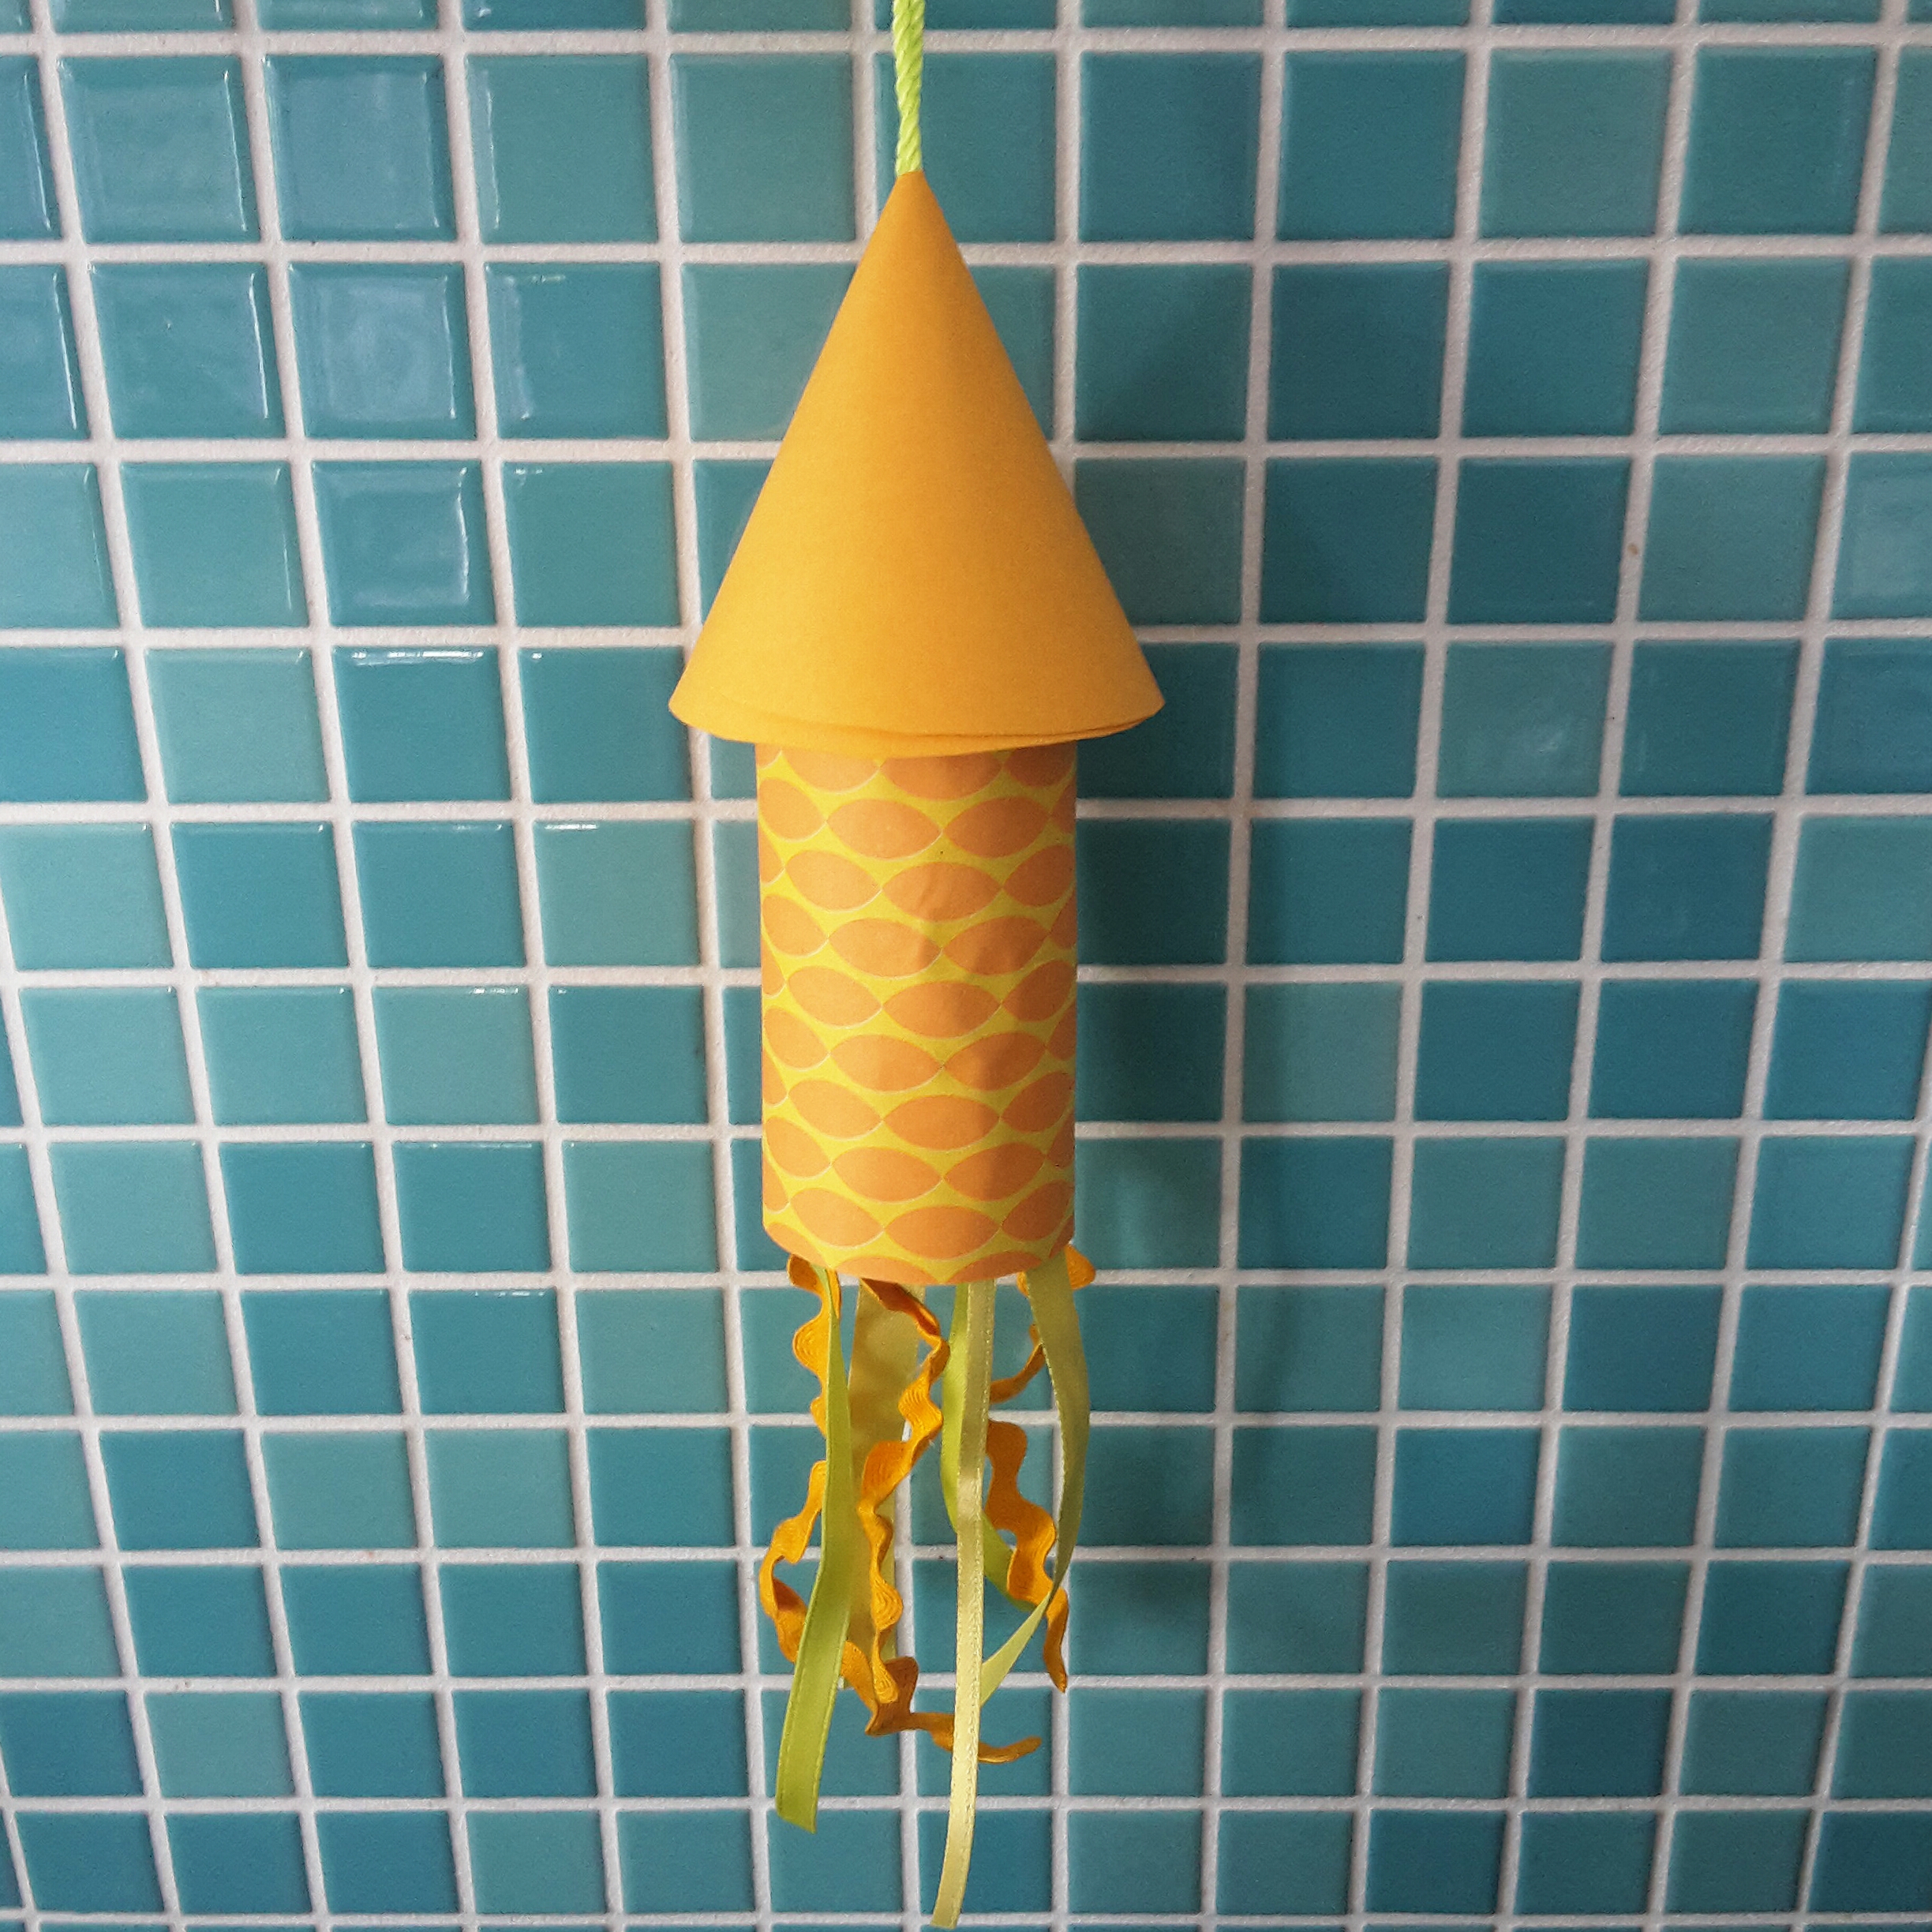 101 ideeën om te knutselen met kinderen, zoals een raket van een wc rolletje